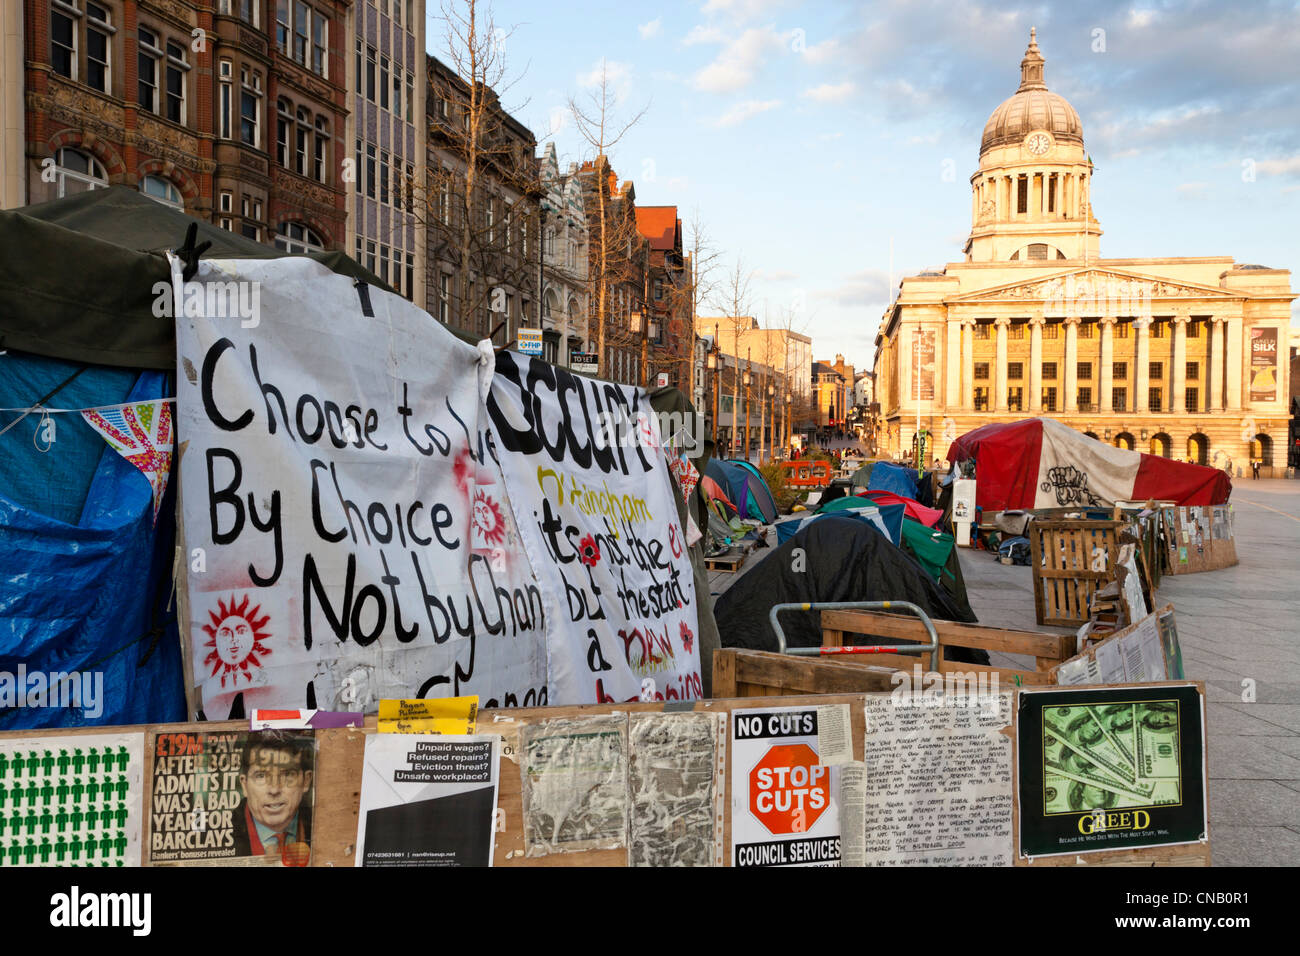 Ocupar el campamento de protesta en la Plaza del Mercado Viejo, Nottingham, Inglaterra, Reino Unido. El campamento fue establecido en octubre de 2011. Foto de stock